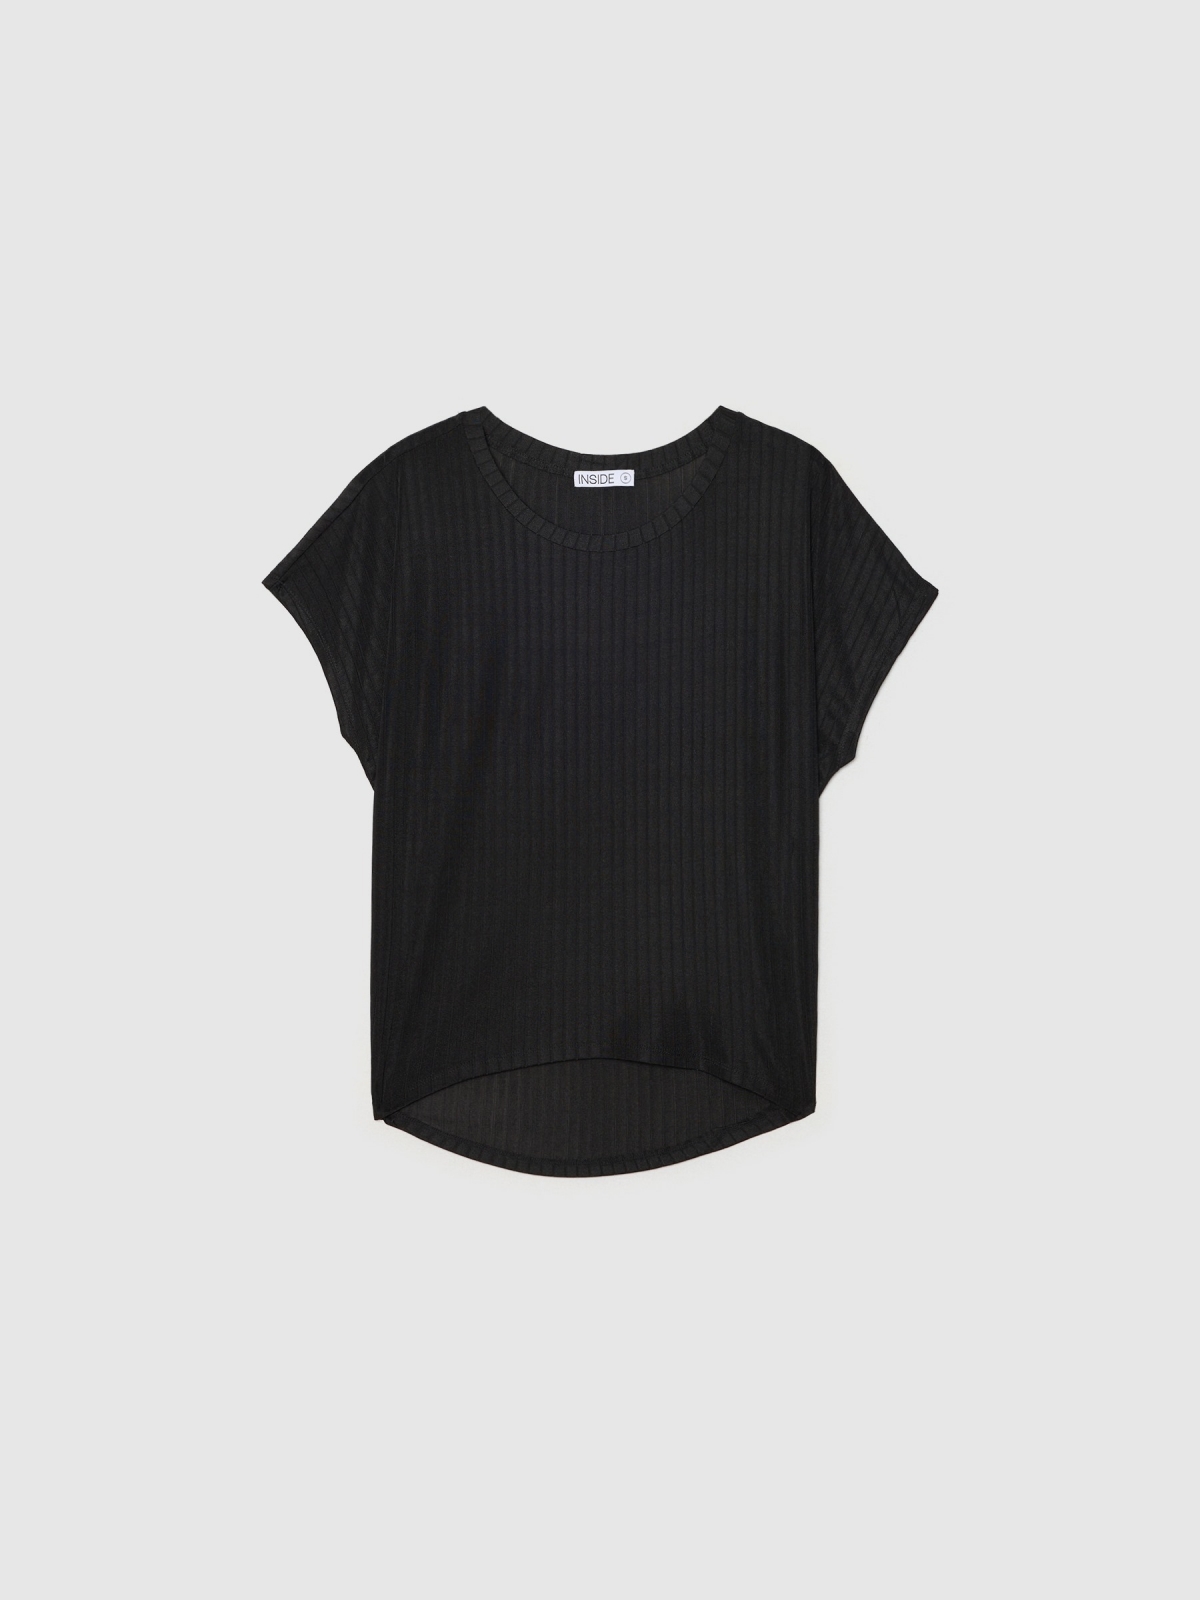  T-shirt rib com bainha assimétrica preto